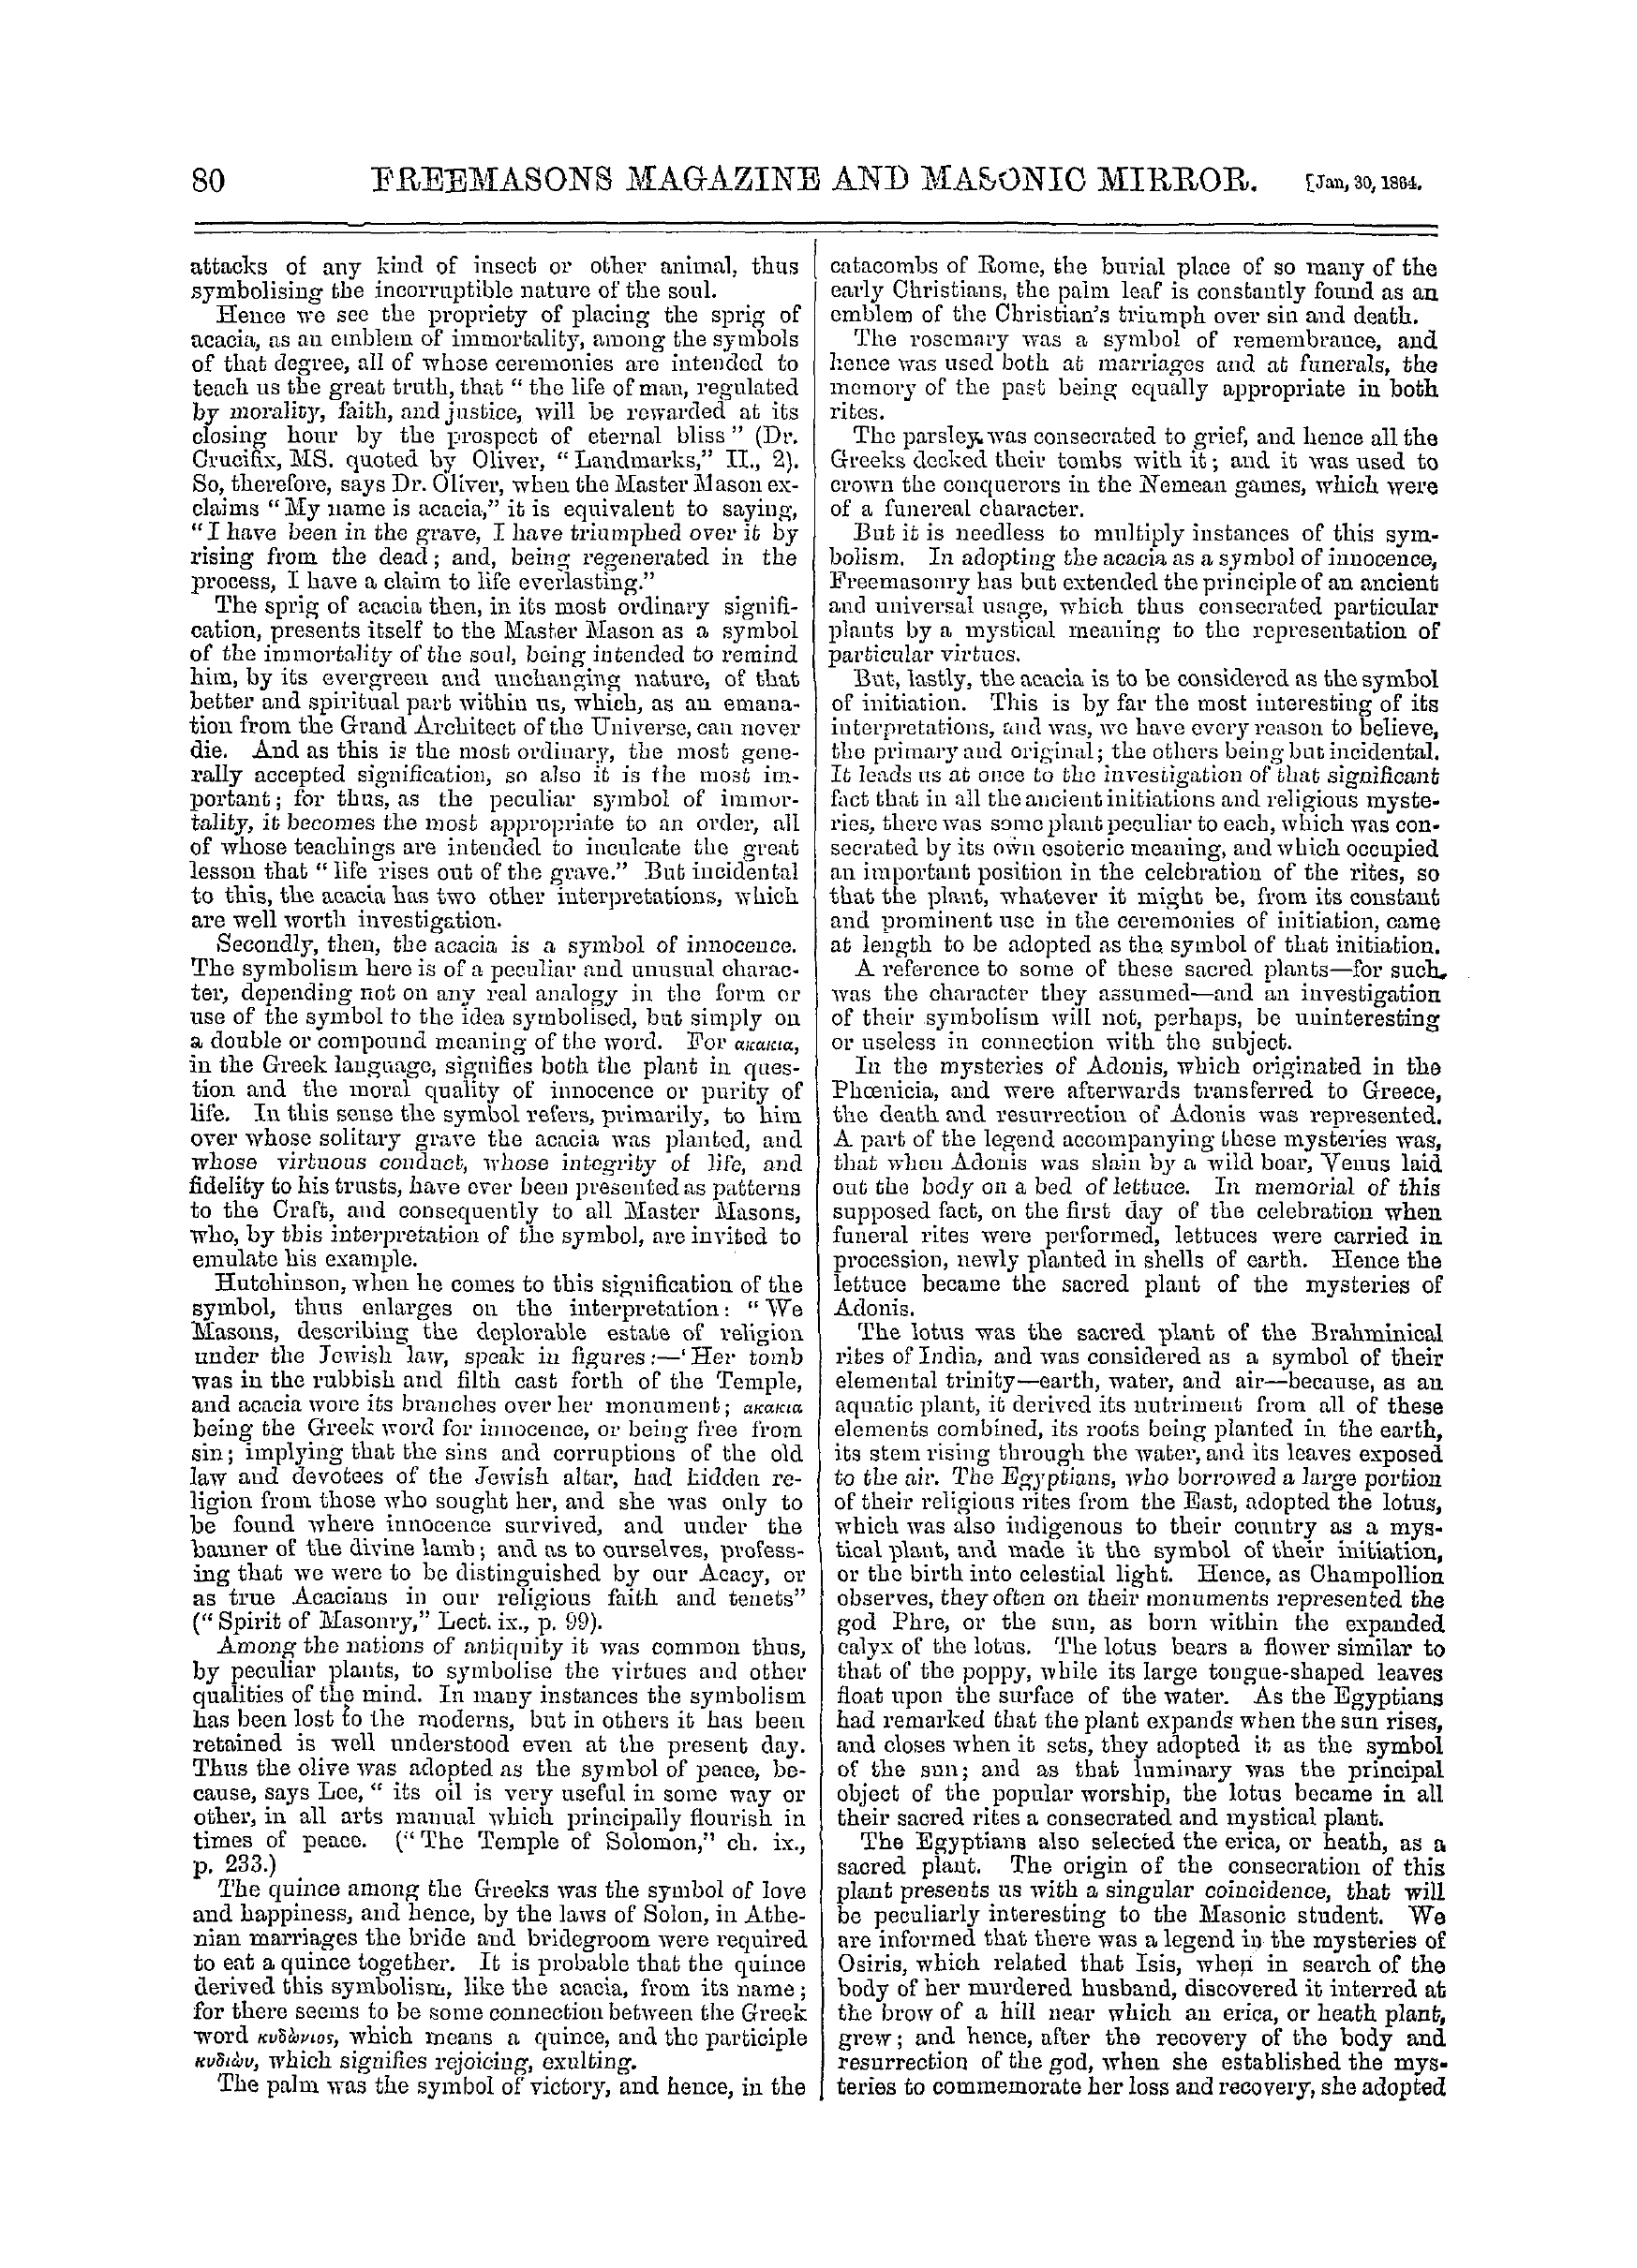 The Freemasons' Monthly Magazine: 1864-01-30: 4